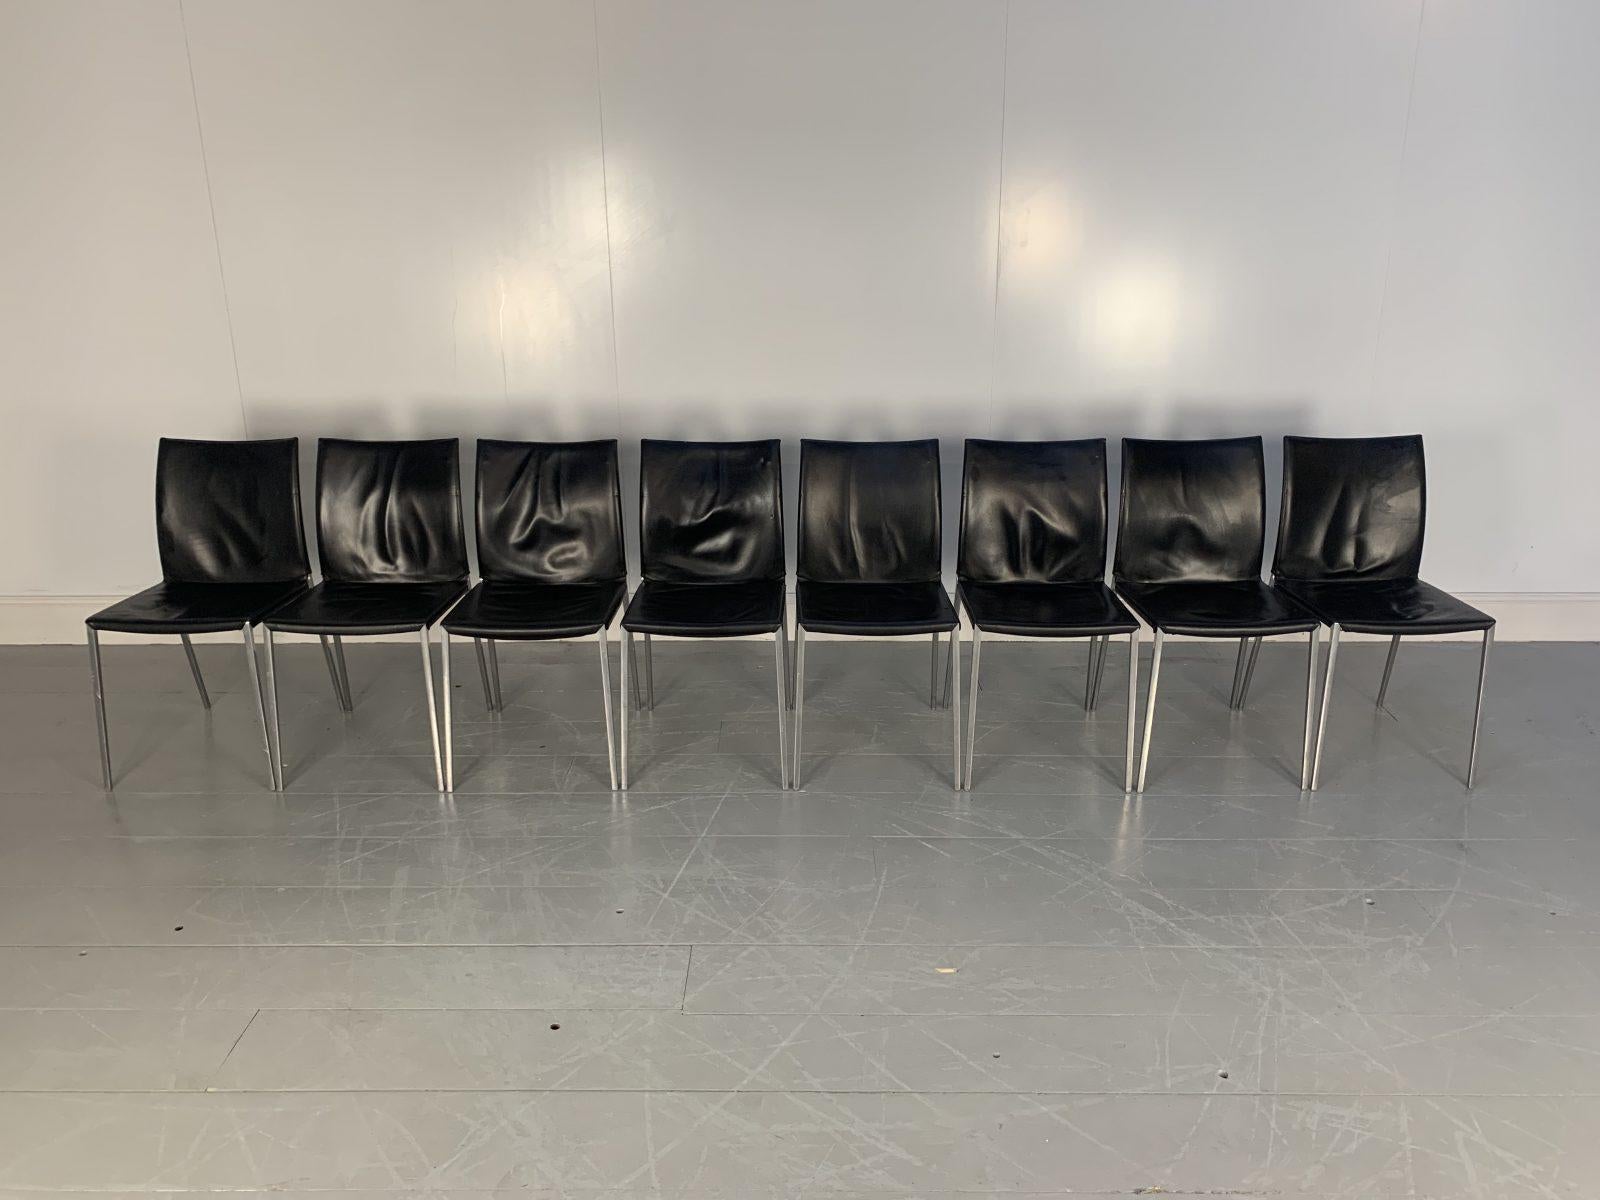 Bonjour les amis, et bienvenue à une nouvelle offre incontournable de Lord Browns Furniture, la première source de canapés et de chaises de qualité au Royaume-Uni.

Nous vous proposons ici l'un des ensembles de chaises de salle à manger les plus